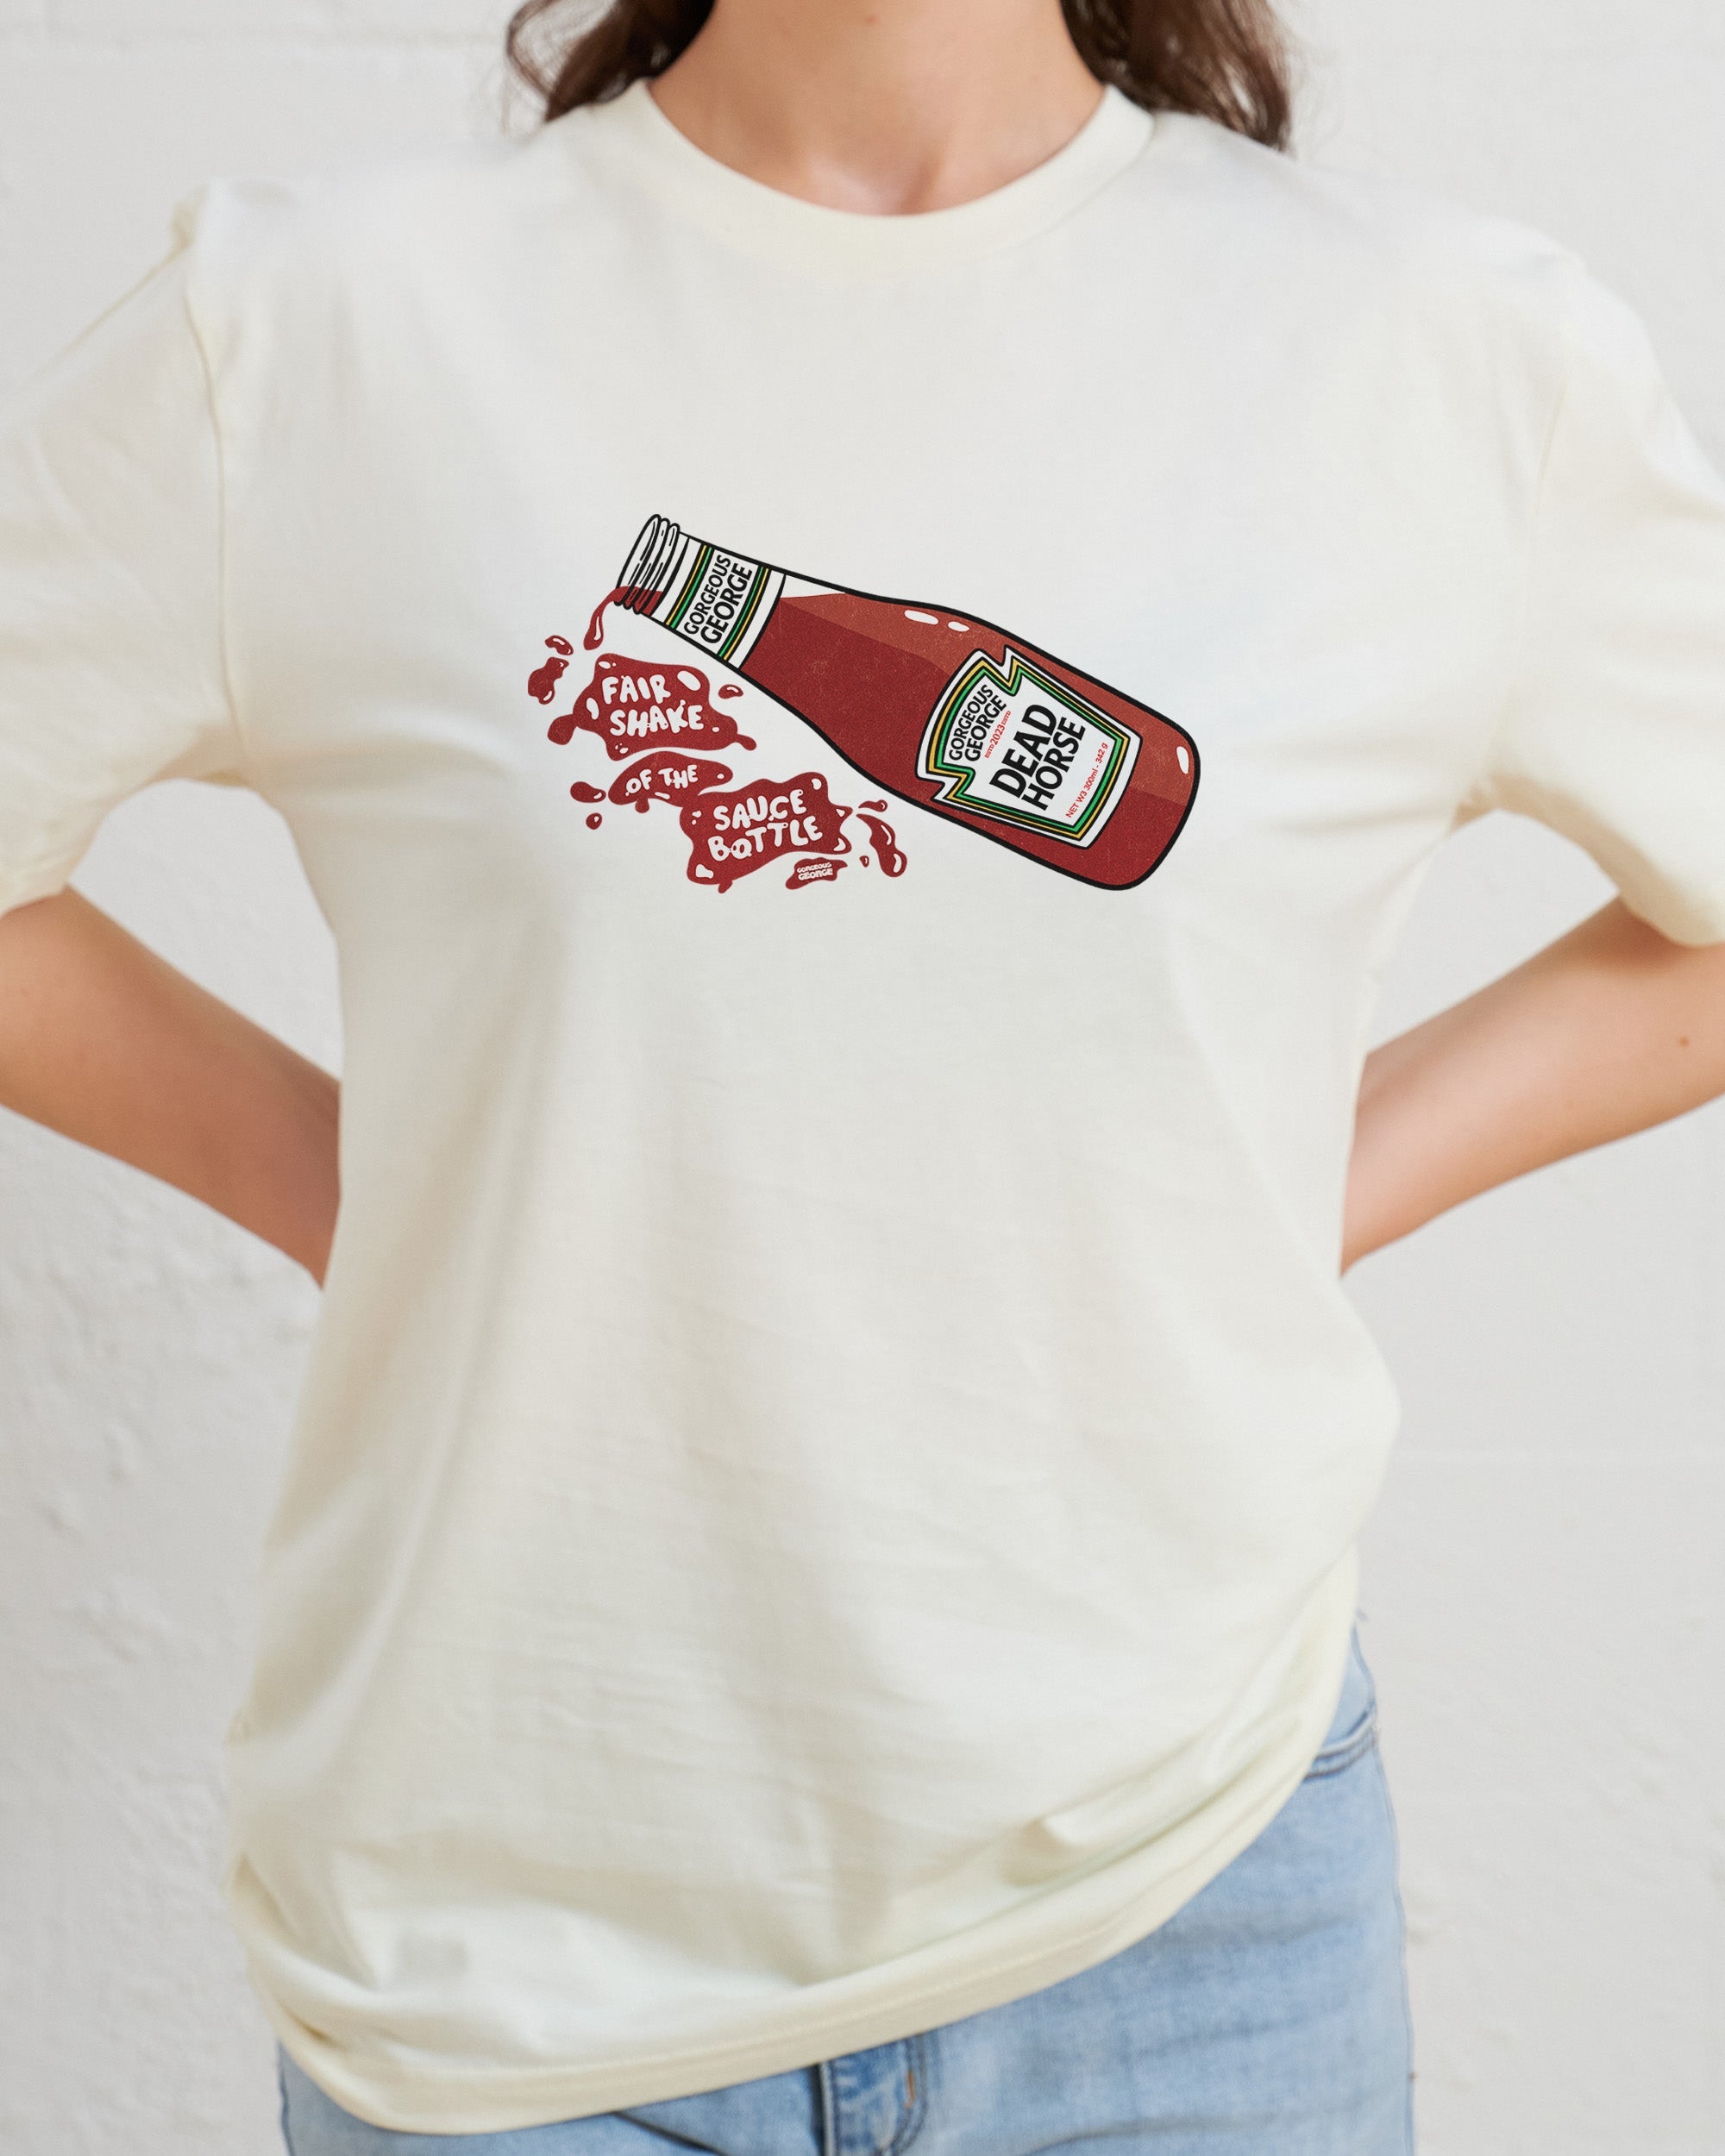 Fair Shake of the Sauce Bottle T-Shirt Australia Online Natural